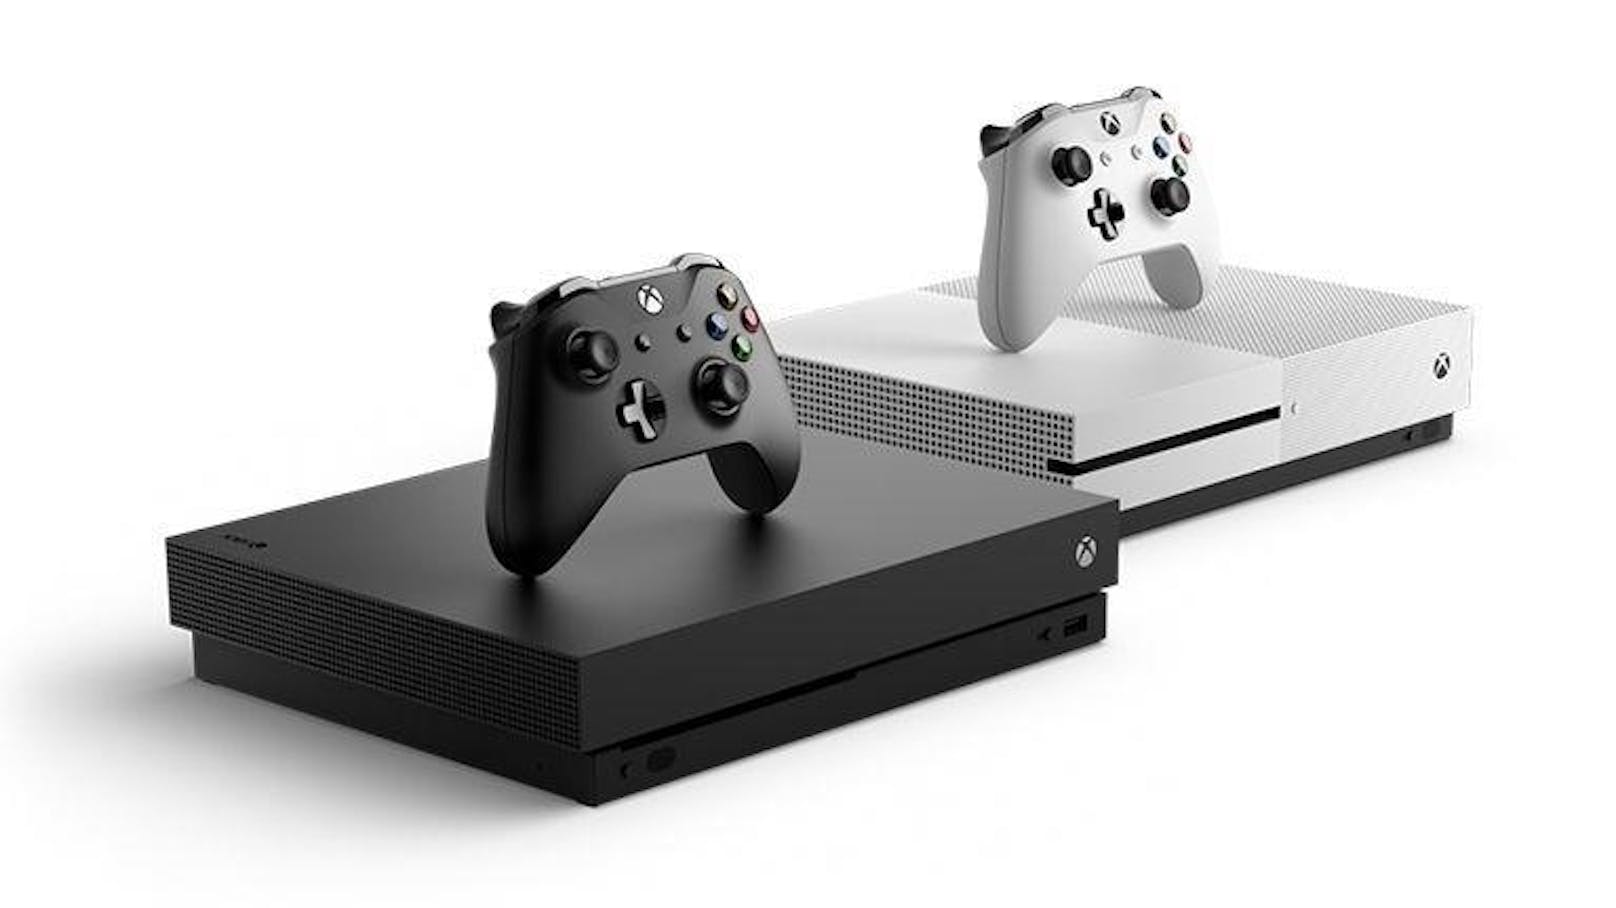 <b>Xbox One X:</b> "Die stärkste Konsole der Welt", "Leistung ohne Kompromisse", "unvergleichbare Kompatibilität und herausragendes Design", "echtes 4K-Gaming": Microsoft überschlägt sich förmlich mit Superlativen bei der Beschreibung der Xbox One X. Die stärkere Evolution der Xbox One ist tatsächlich enorm mächtig und kann beeindruckende Grafiken auf den Fernseher zaubern, doch gerade bei den Games gibt es Nachholbedarf. <a href="https://www.heute.at/digital/games/story/Xbox-One-X-im-Test--Wo-sind-die-Spiele--43259707">"Heute" titelte: Xbox One X: Top Hardware, aber wo ist die Vision?</a>